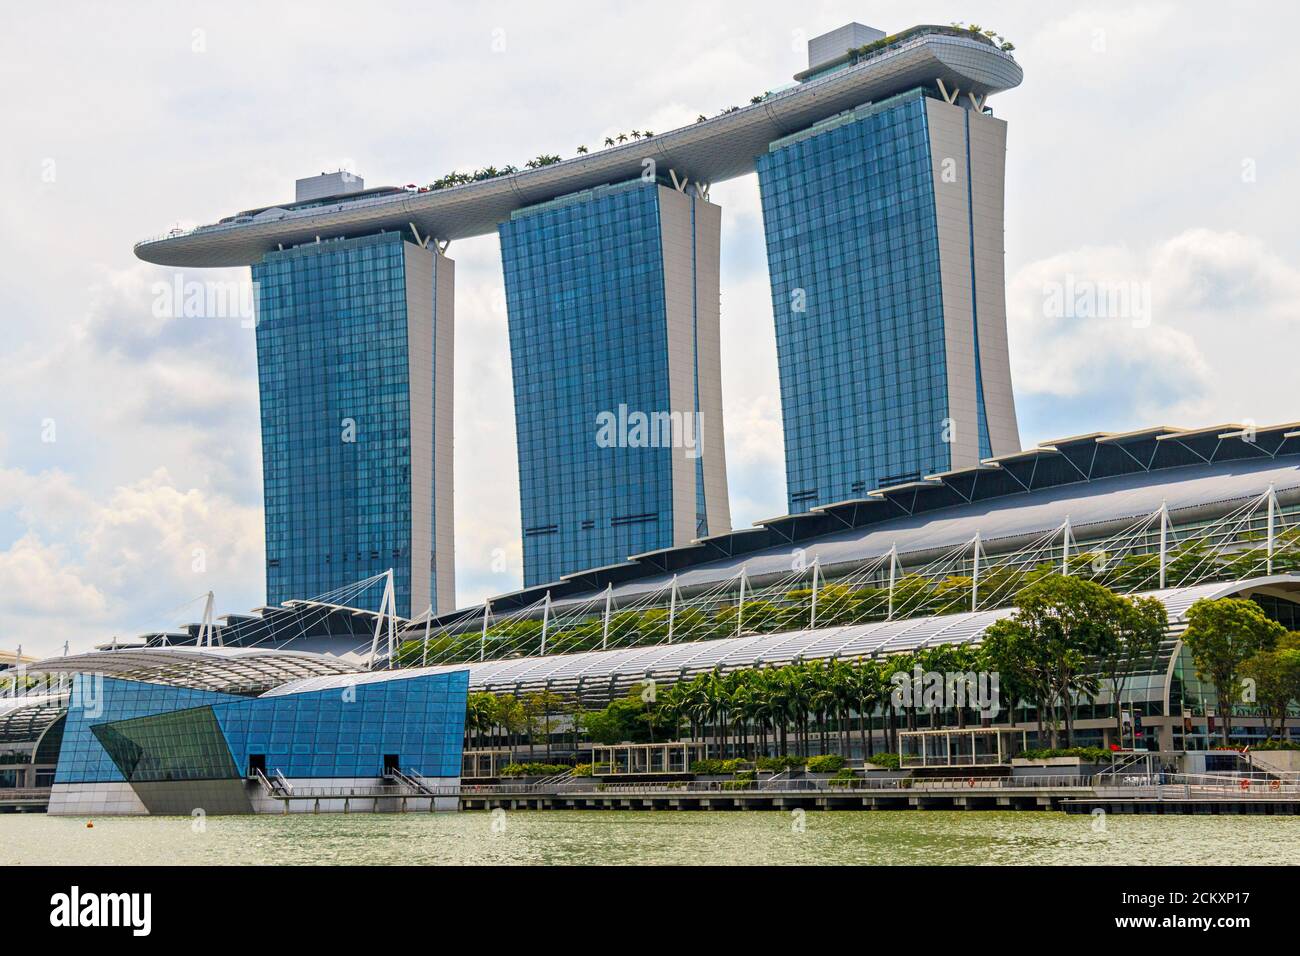 Ouvert en 2010, Marina Bay Sands est un hôtel de 2,561 chambres situé le long de Marina Bay à Singapour. Développé par Las Vegas Sands, il est facturé comme la propriété de casino autonome la plus chère au monde à 8 milliards de dollars. L'hôtel dispose d'un centre de congrès, de boutiques haut de gamme, de théâtres, de sept restaurants, d'une patinoire, d'un casino et est surmonté d'un Skypark de 340 mètres de long (310 mètres de long) d'une capacité de 3,900 personnes et d'une piscine à débordement, située sur la plus grande plateforme publique en porte-à-faux du monde. Banque D'Images